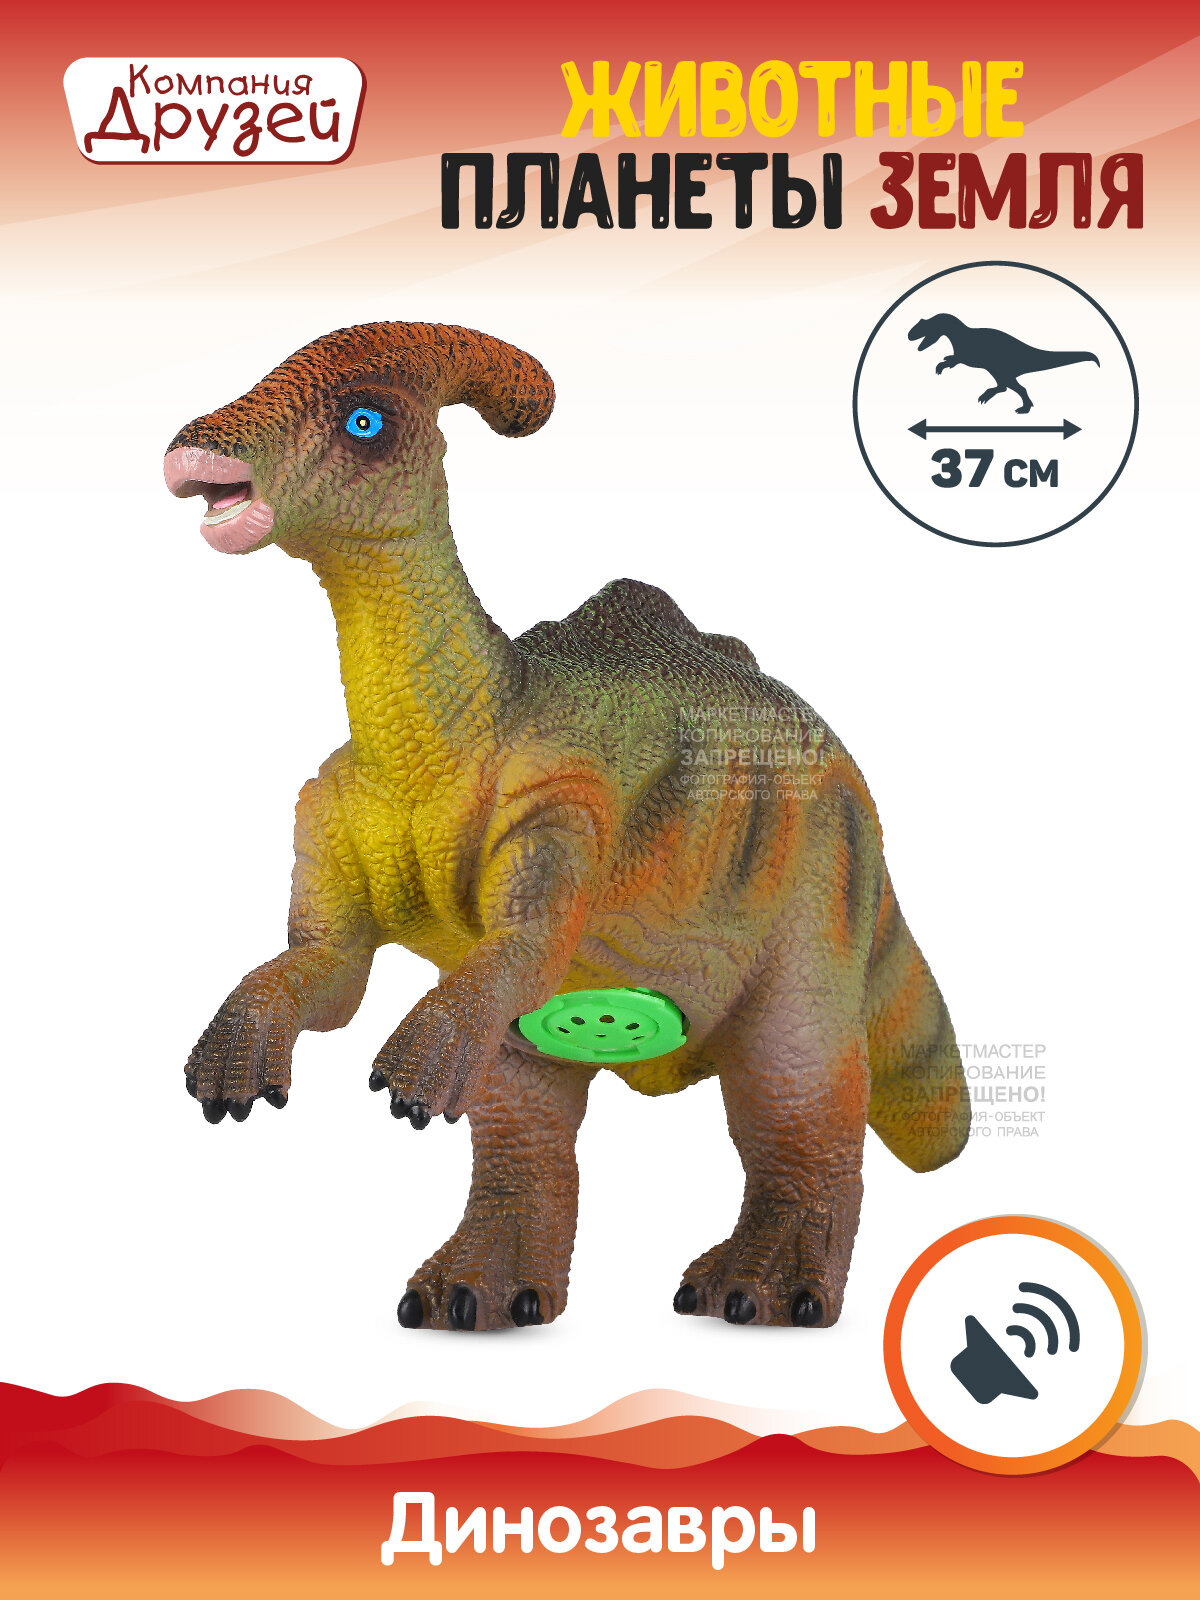 Игрушка для детей Динозавр Паразауролоф ТМ компания друзей, серия "Животные планеты Земля", с чипом, звук - рёв животного, эластичный пластик, JB0207968